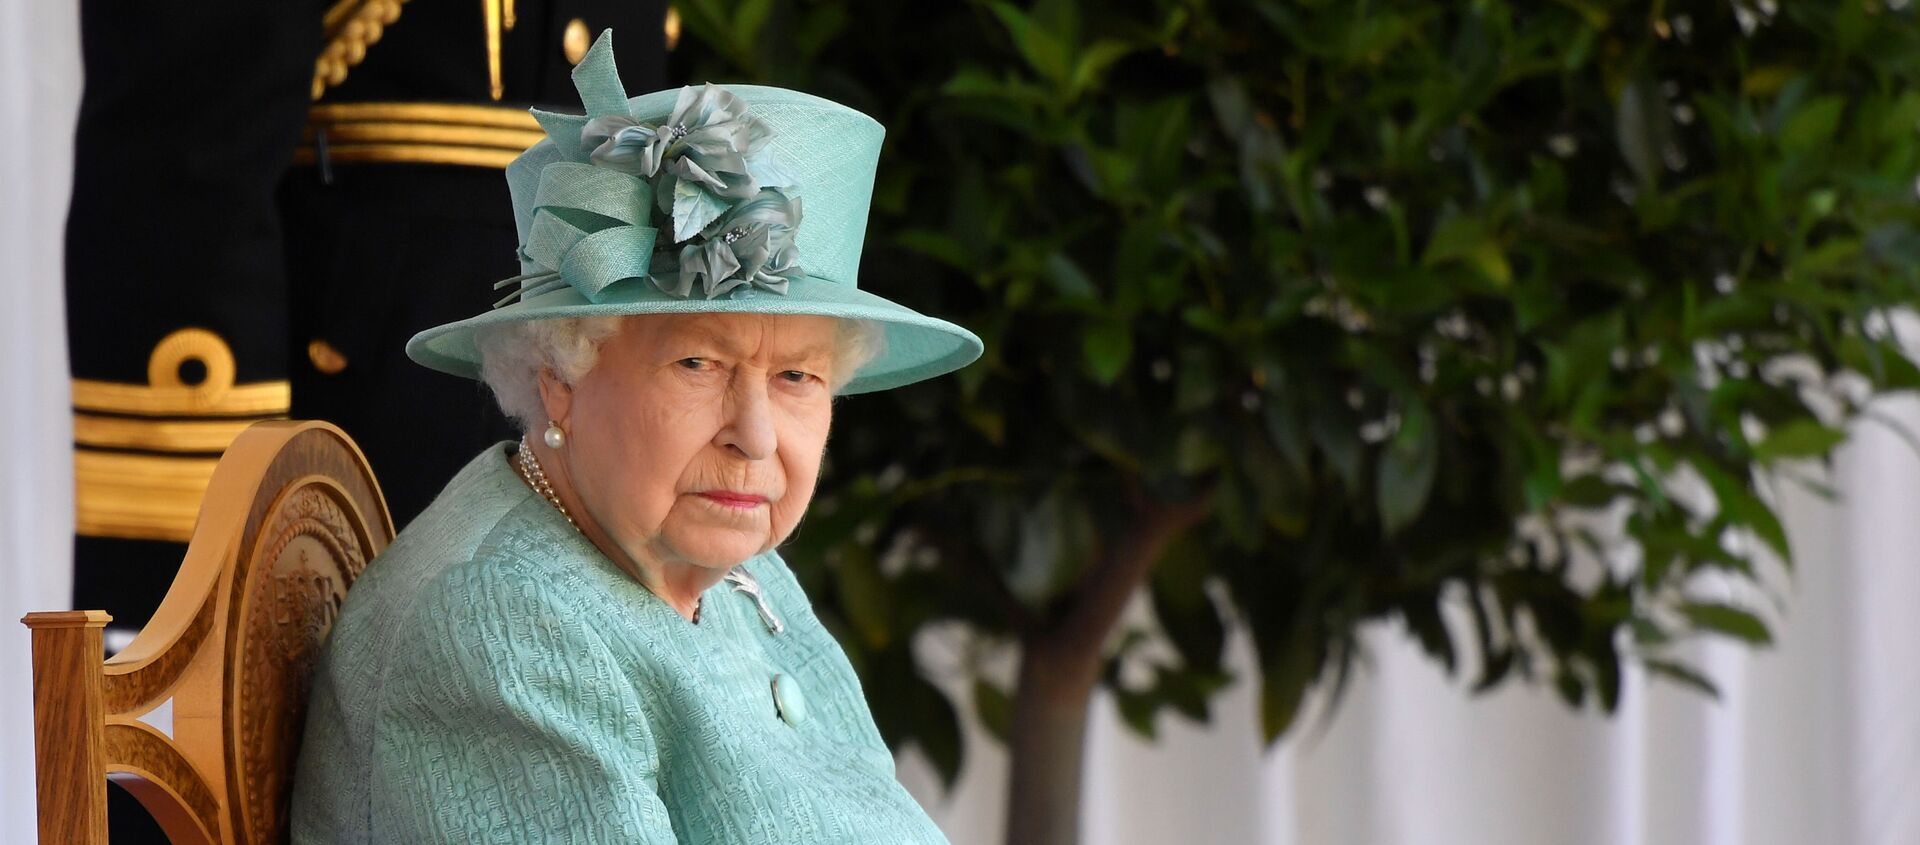 الملكة البريطانية إليزابيث تحضر احتفالا بعيد ميلادها الرسمي في قلعة وندسور، بريطانيا، 13 يونيو/ حزيران 2020 - سبوتنيك عربي, 1920, 23.06.2021